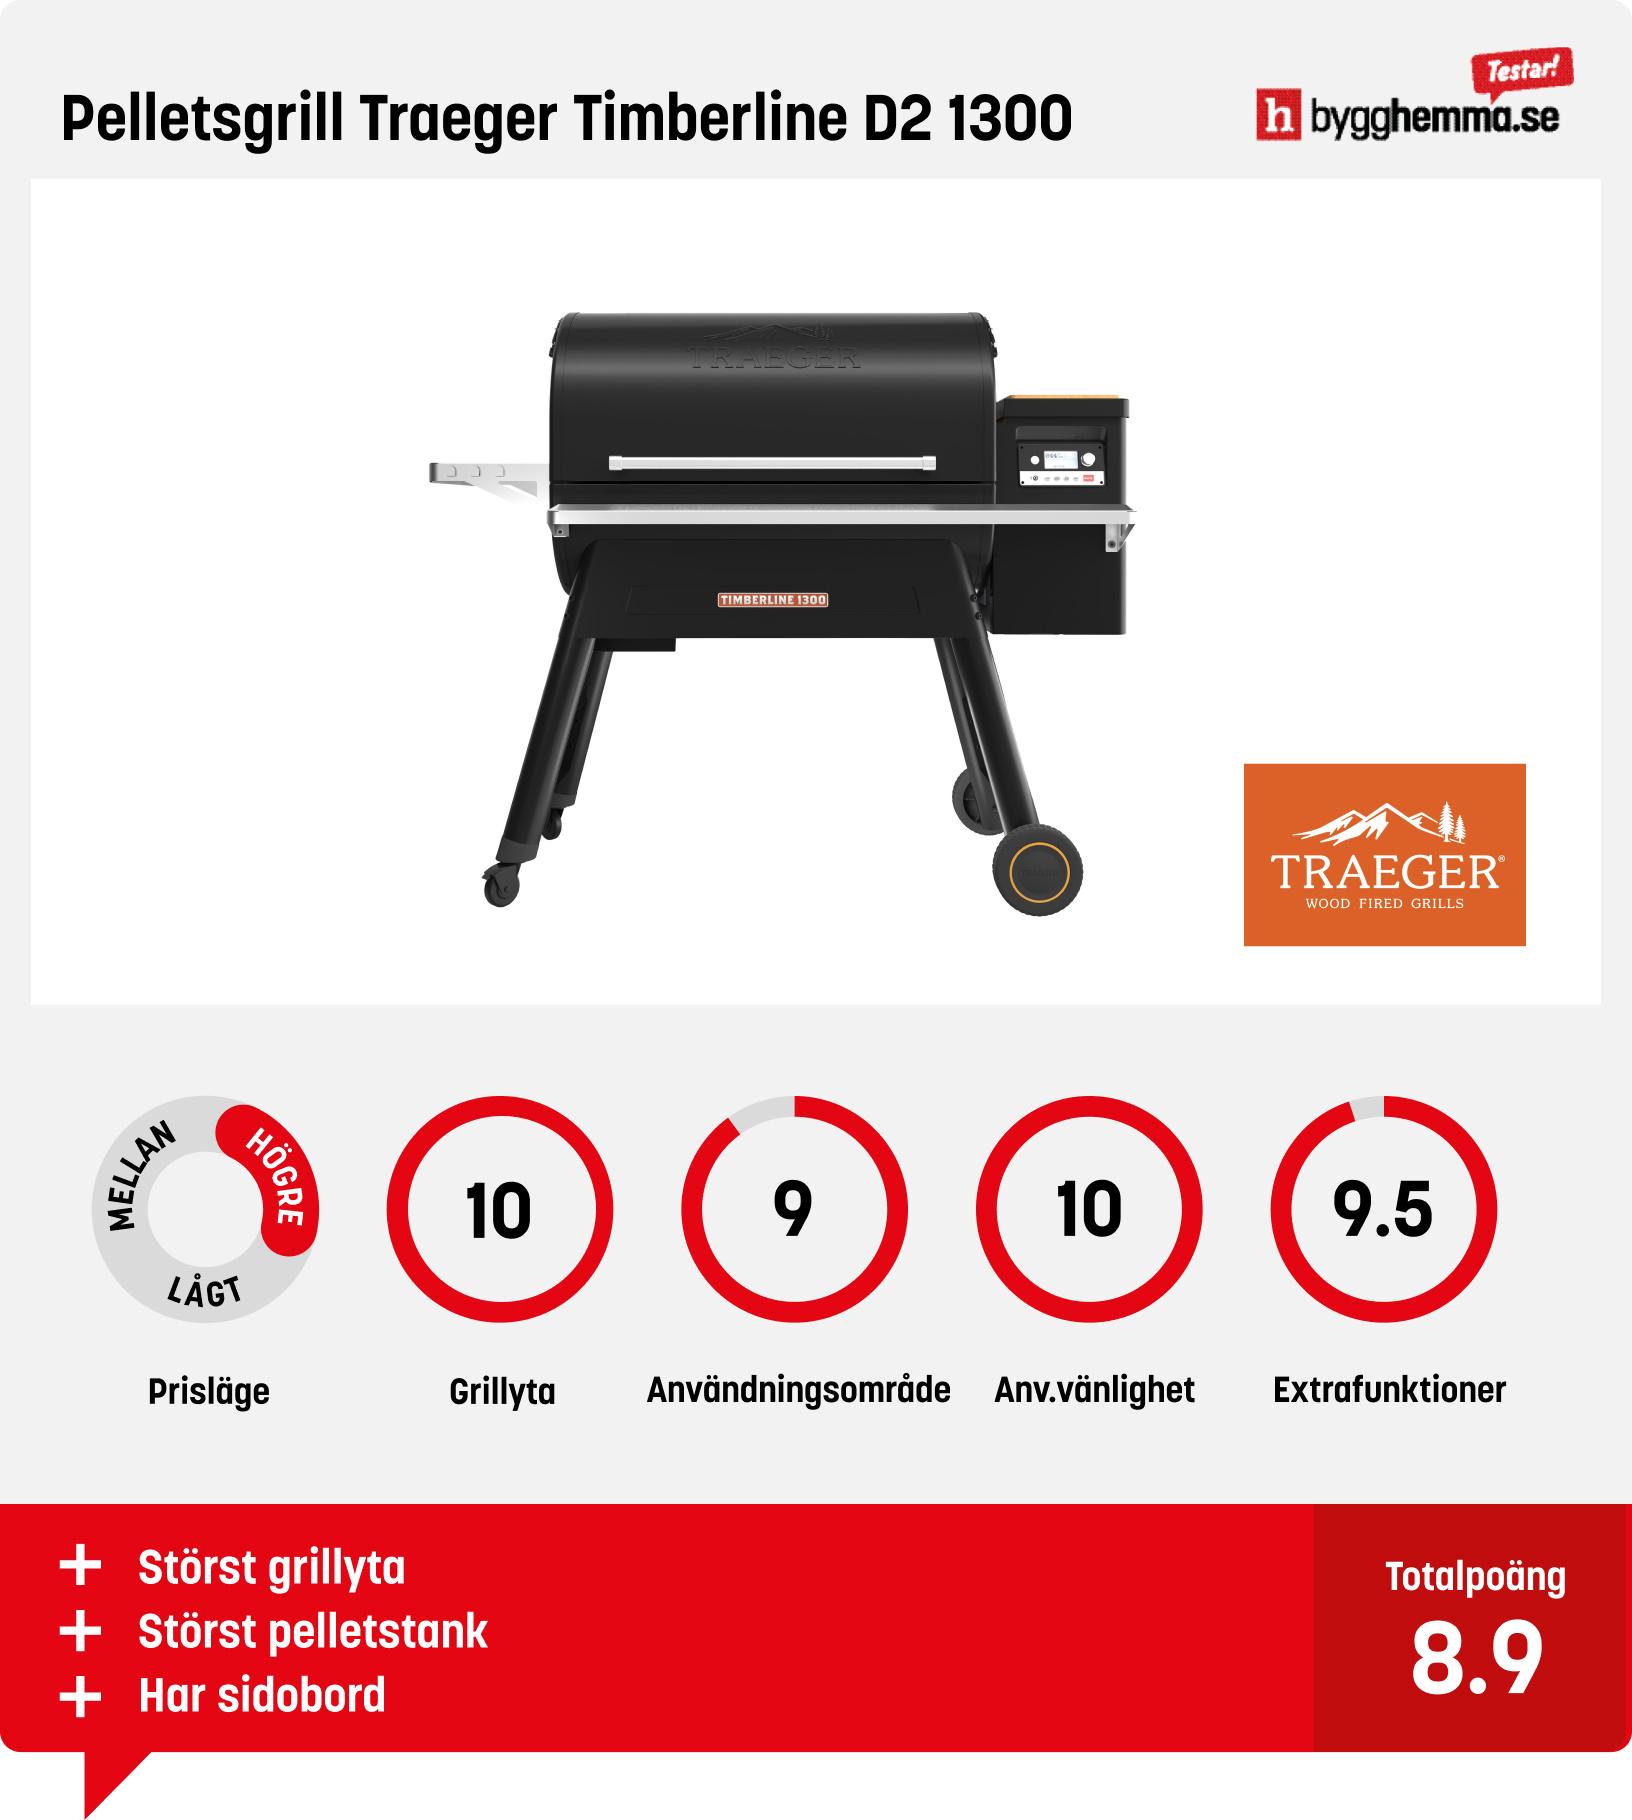 Pelletsgrill test - Pelletsgrill Traeger Timberline D2 1300